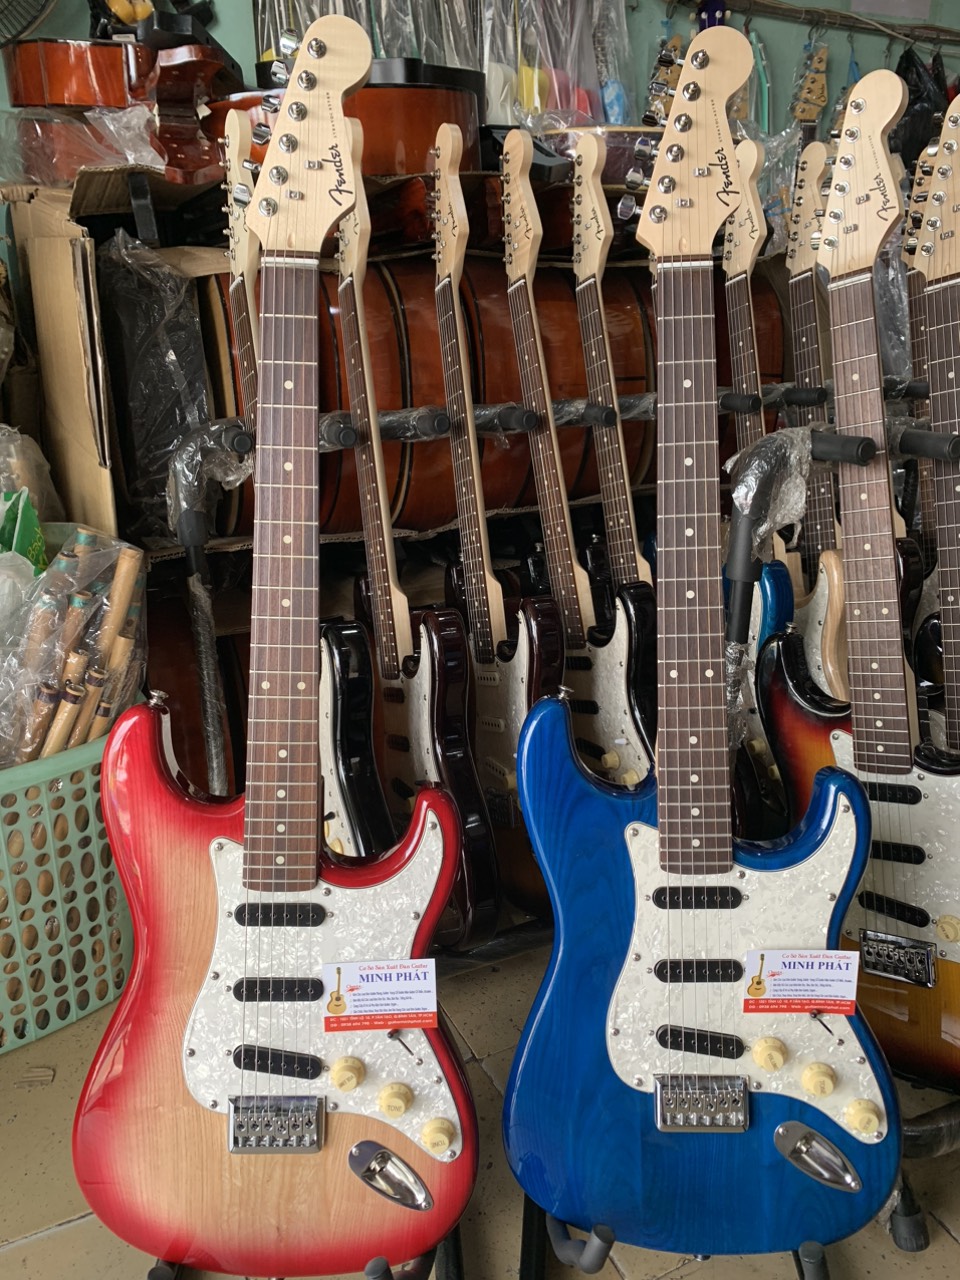 Cửa hàng bán đàn guitar điện chất lượng tại TPHCM - Minh Phát Music - 13